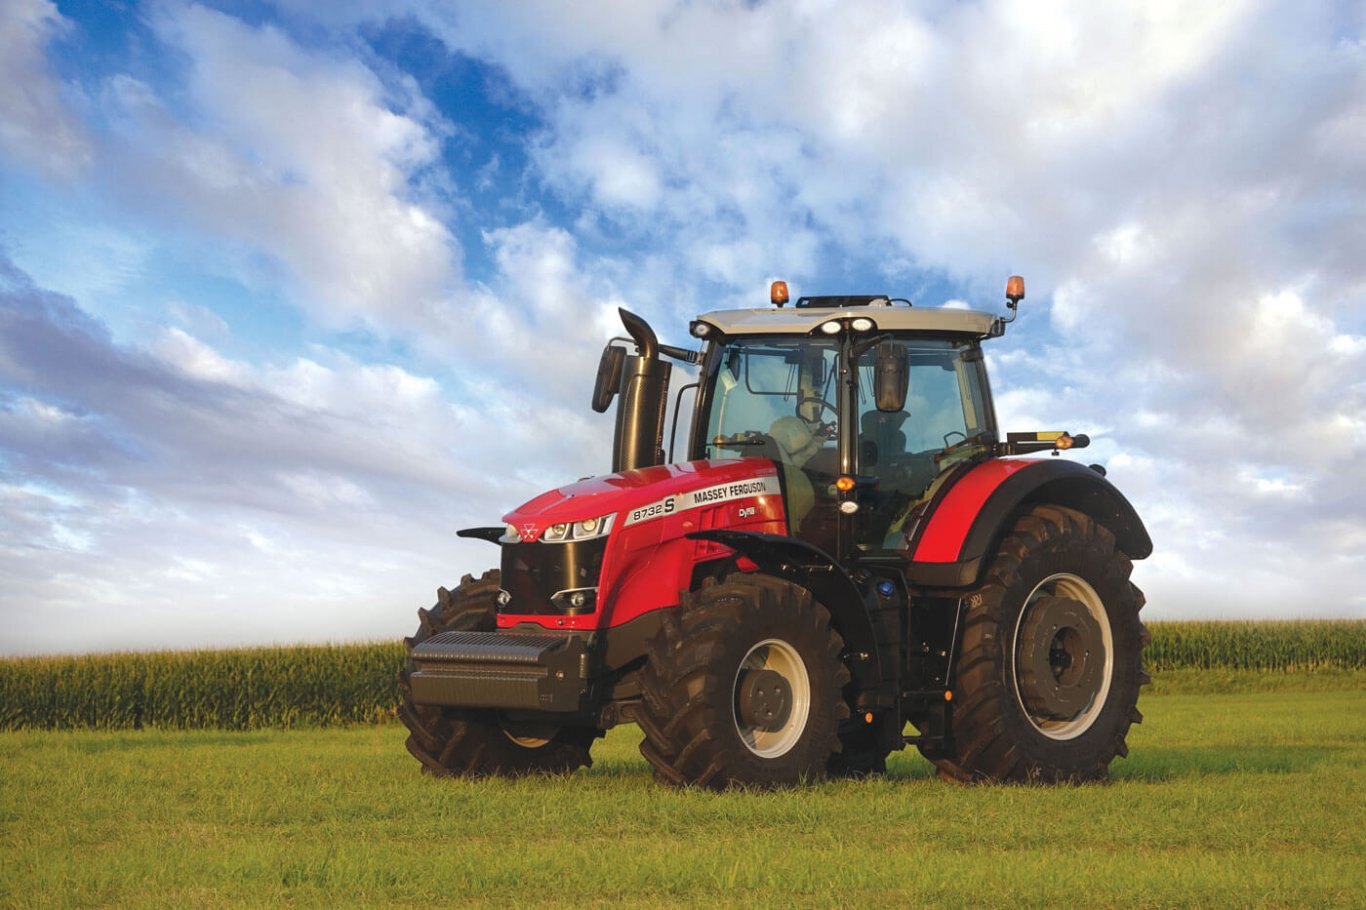 Massey Ferguson MF 8730 S Series Row Crop Tractors